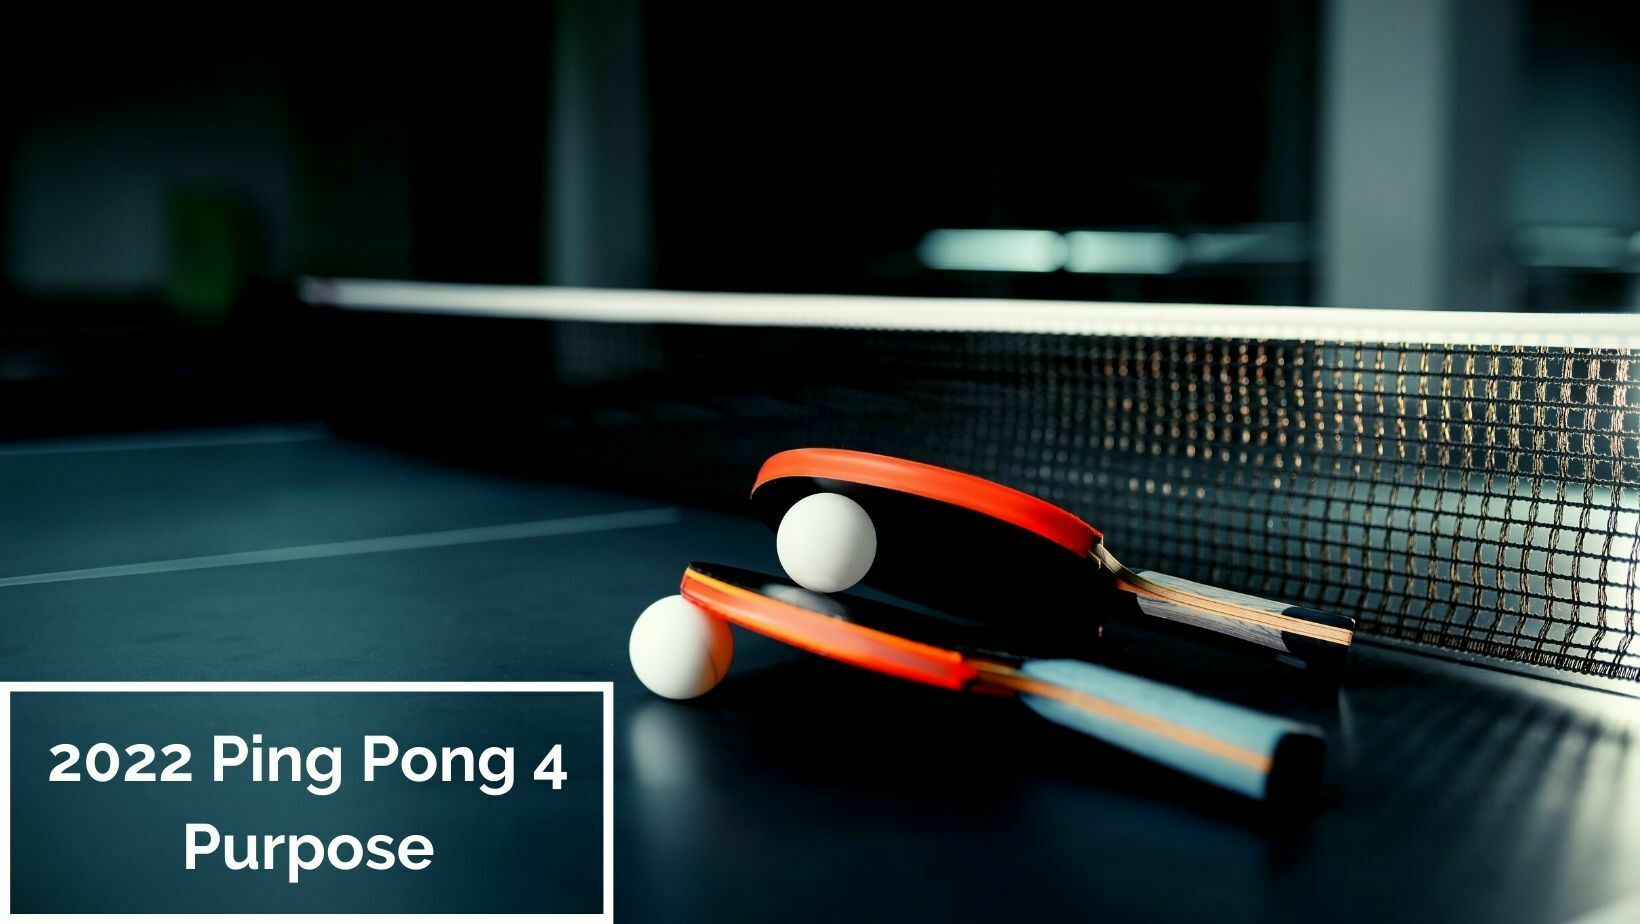 The impactful philanthropy of Clayton Kershaw's Ping Pong 4 Purpose